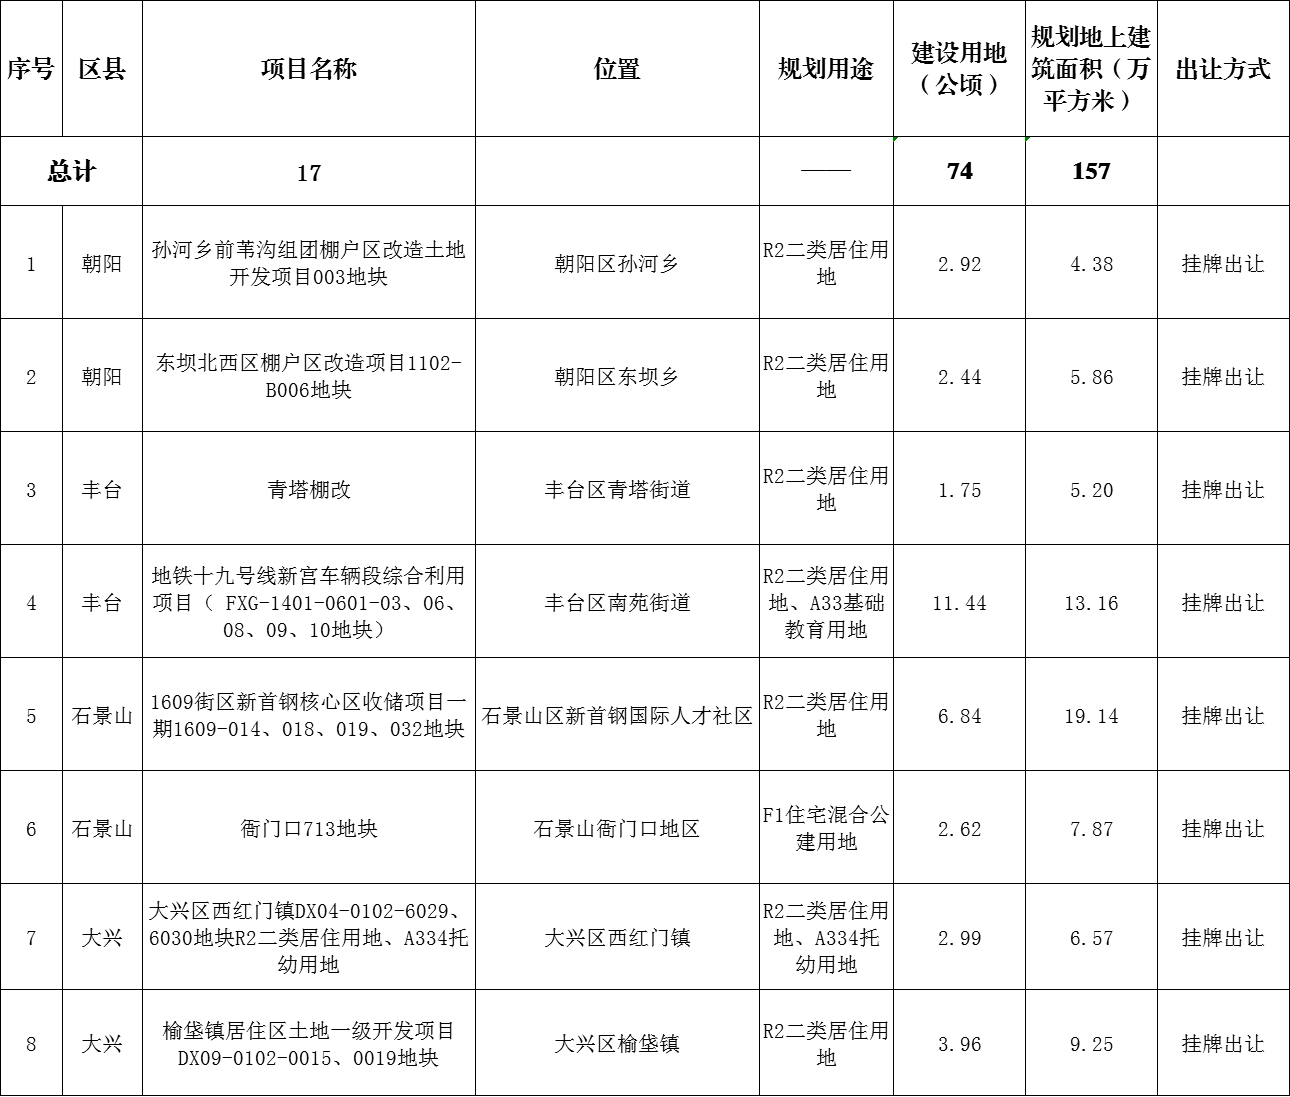 北京市规自委发布2023年部分拟供商品住宅用地项目清单（第一批）